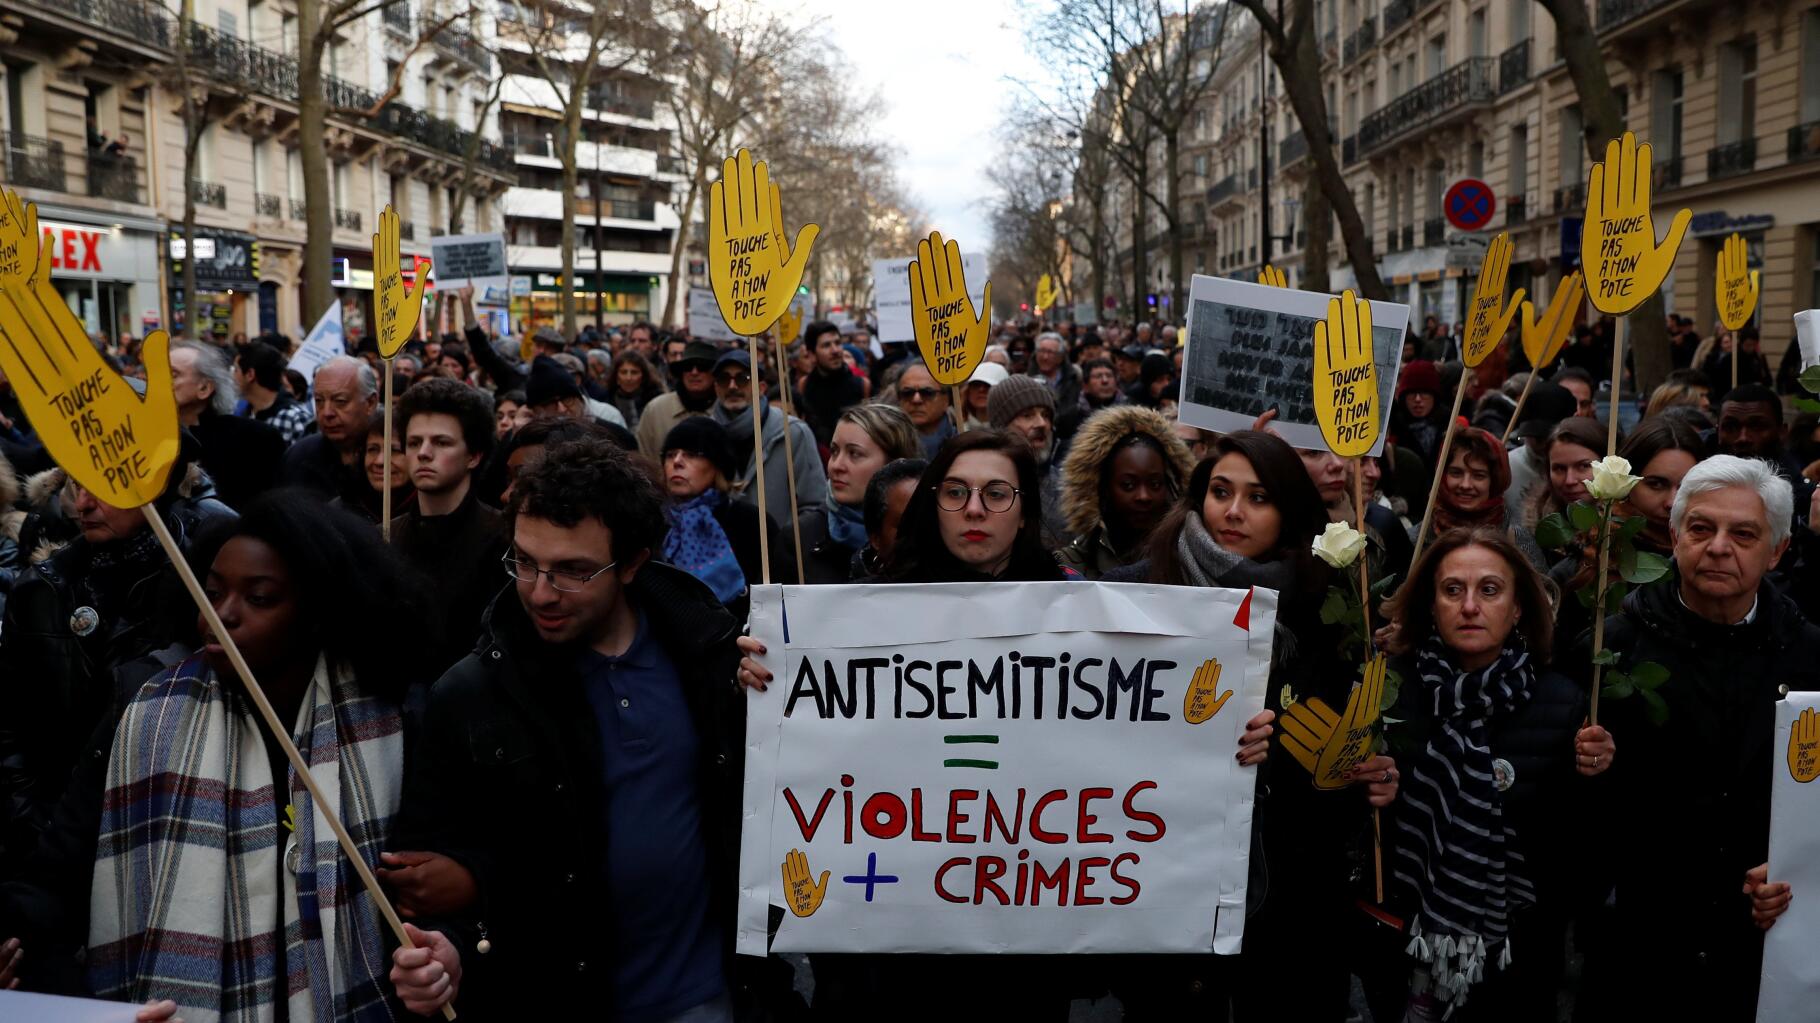 以色列：巴黎恐袭事件四名犹太人葬礼千人随行悼念